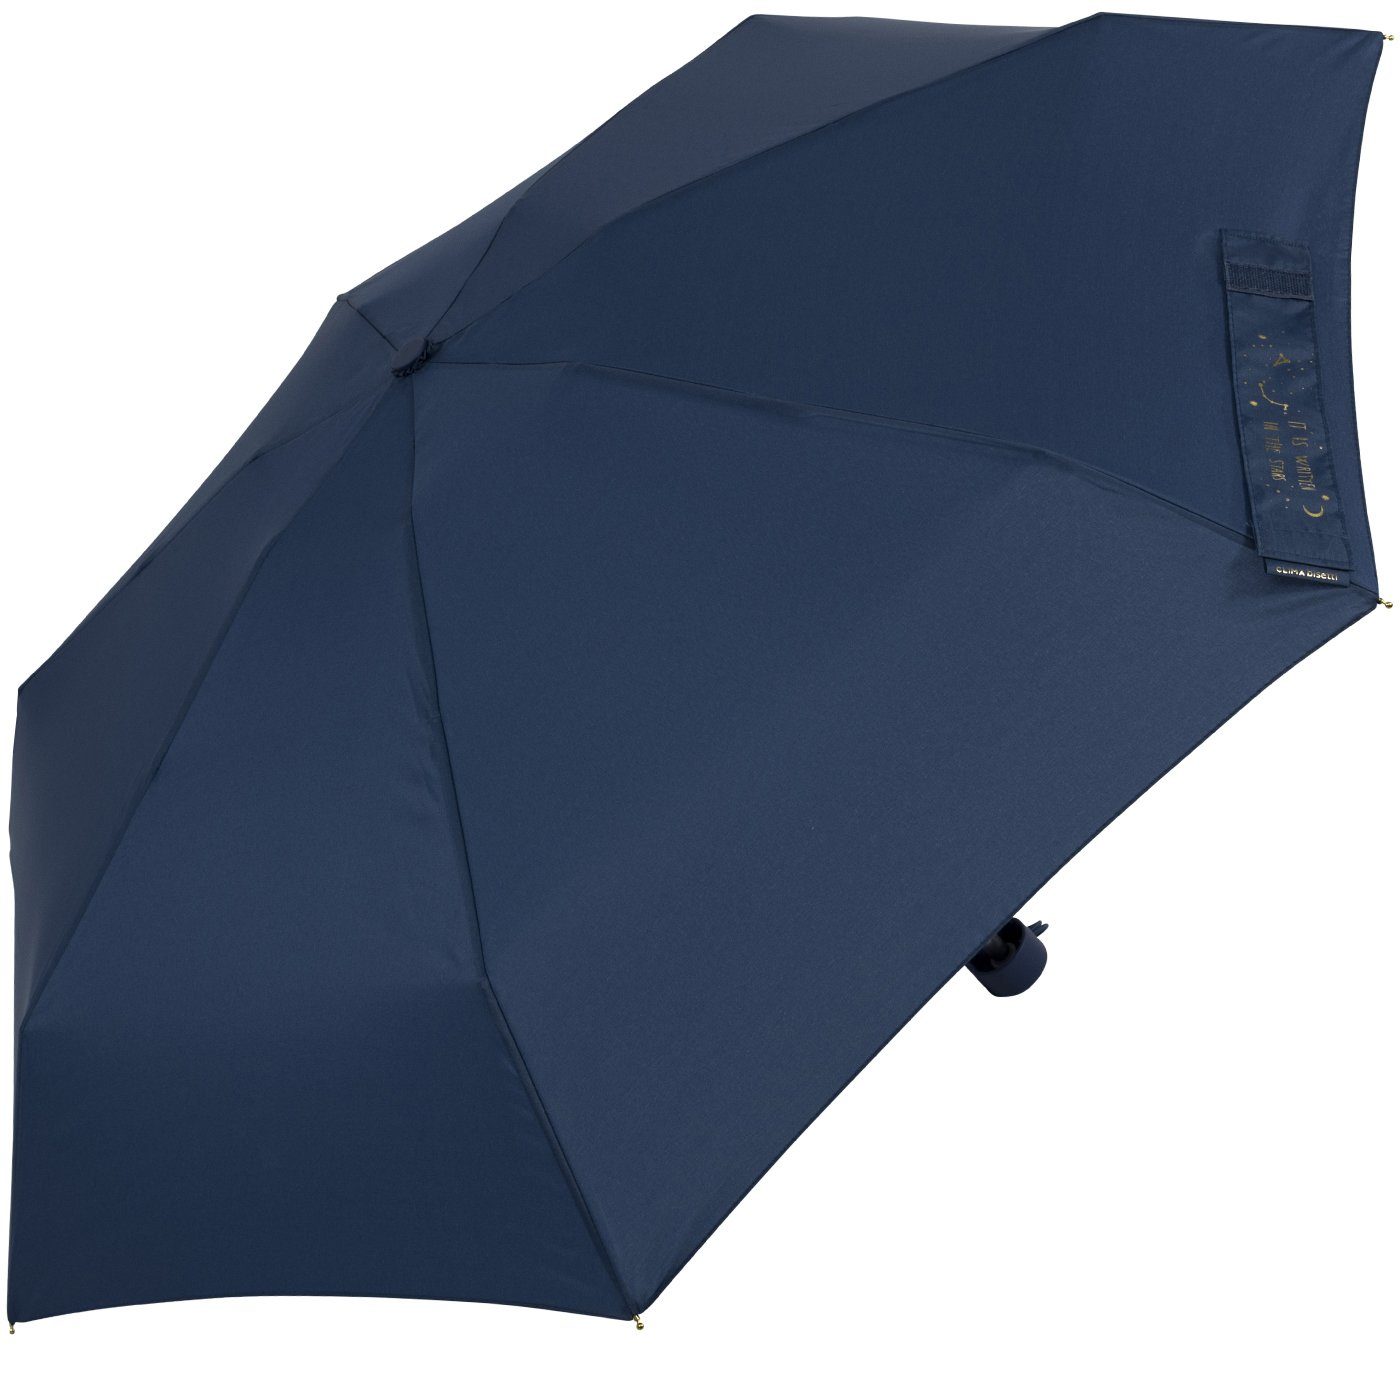 Damen-Regenschirm, und blau, mit stabil goldenem bisetti Taschenregenschirm Aufdruck navy klein, kompakt, auf dem Schließband